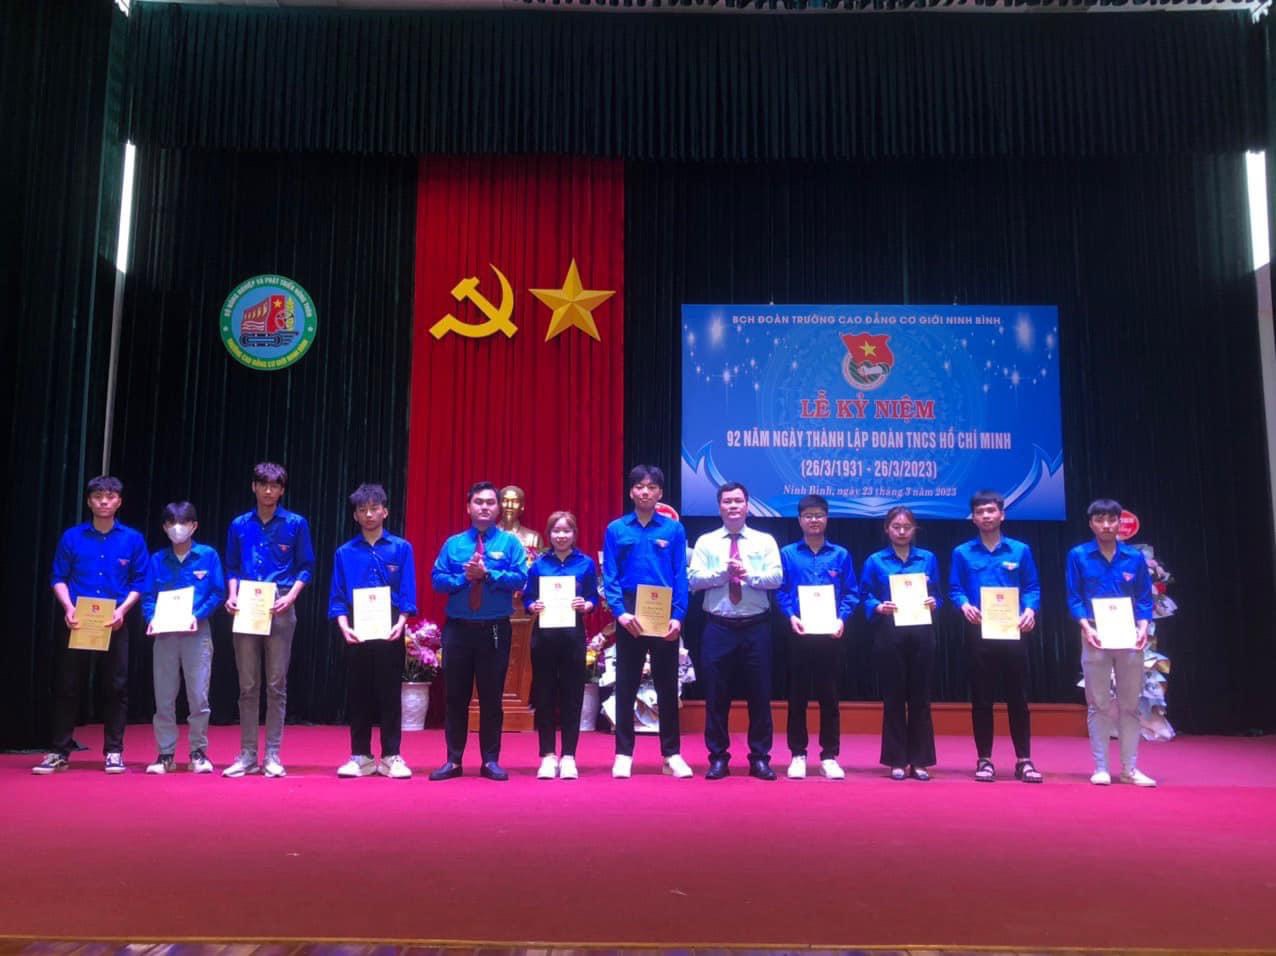 Đoàn trường Cao đẳng Cơ giới triển khai và tặng giấy chứng nhận phong trào “Sinh viên 5 tốt” và “Học sinh 3 rèn luyện” cấp trường Nhân dịp Lễ kỷ niệm 92 năm thành lập Đoàn TNCS Hồ Chí Minh (26/3/1931 - 26/3/2023)